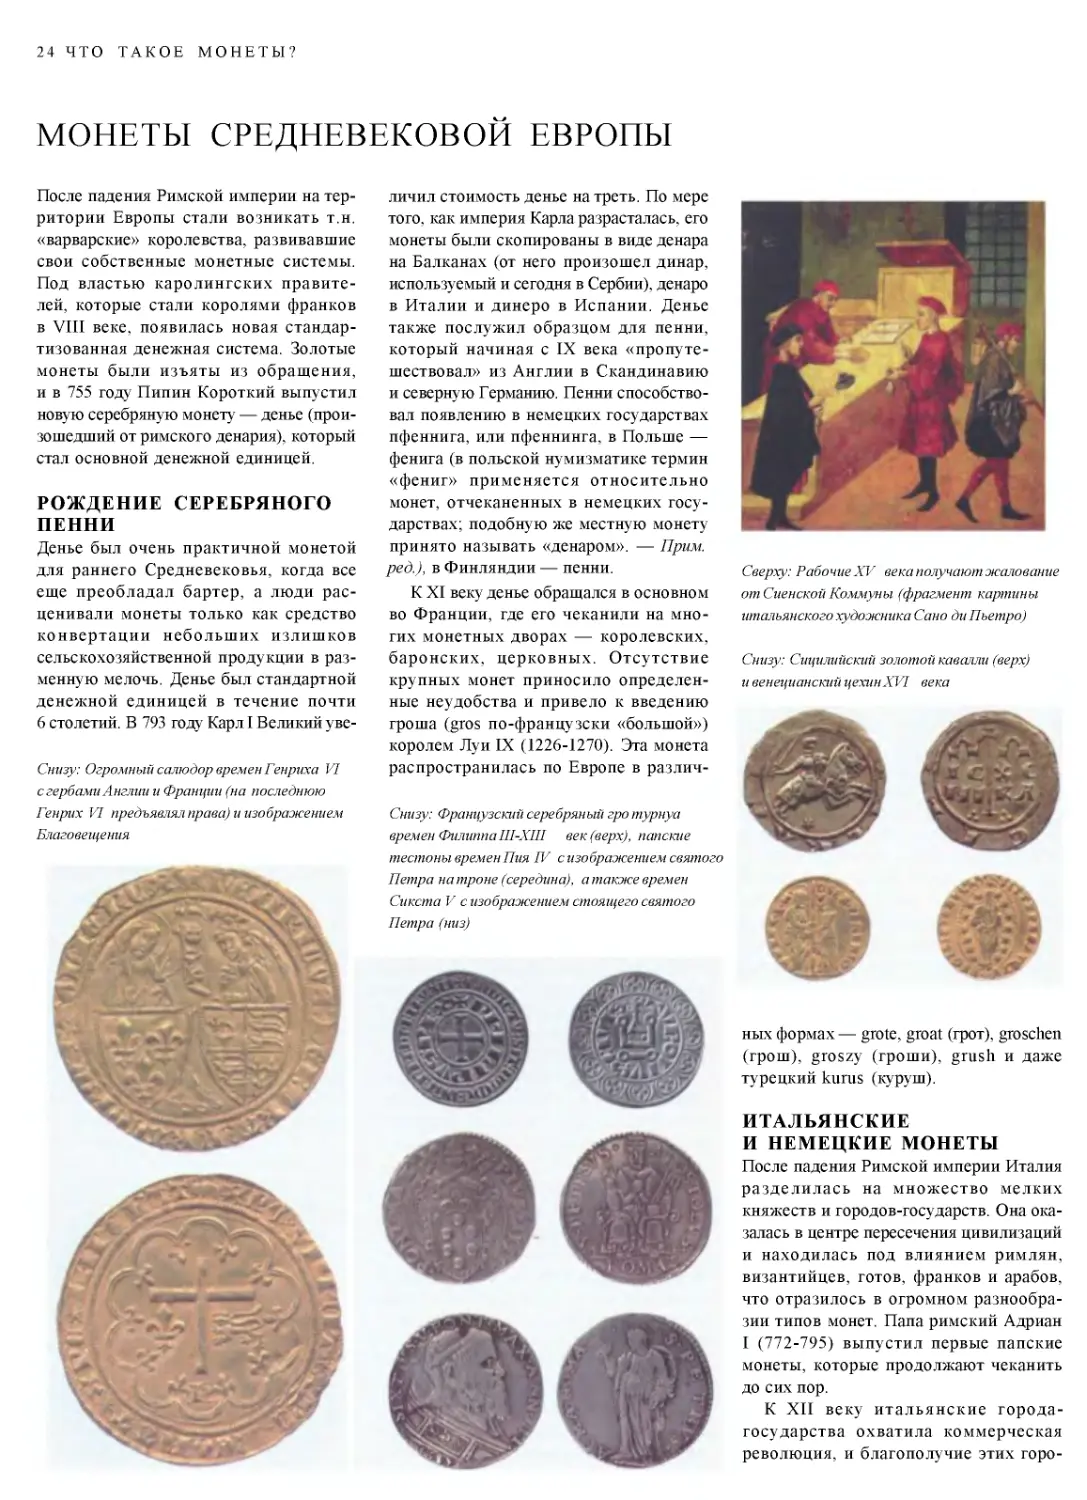 ﻿Монеты Средневековой Европы